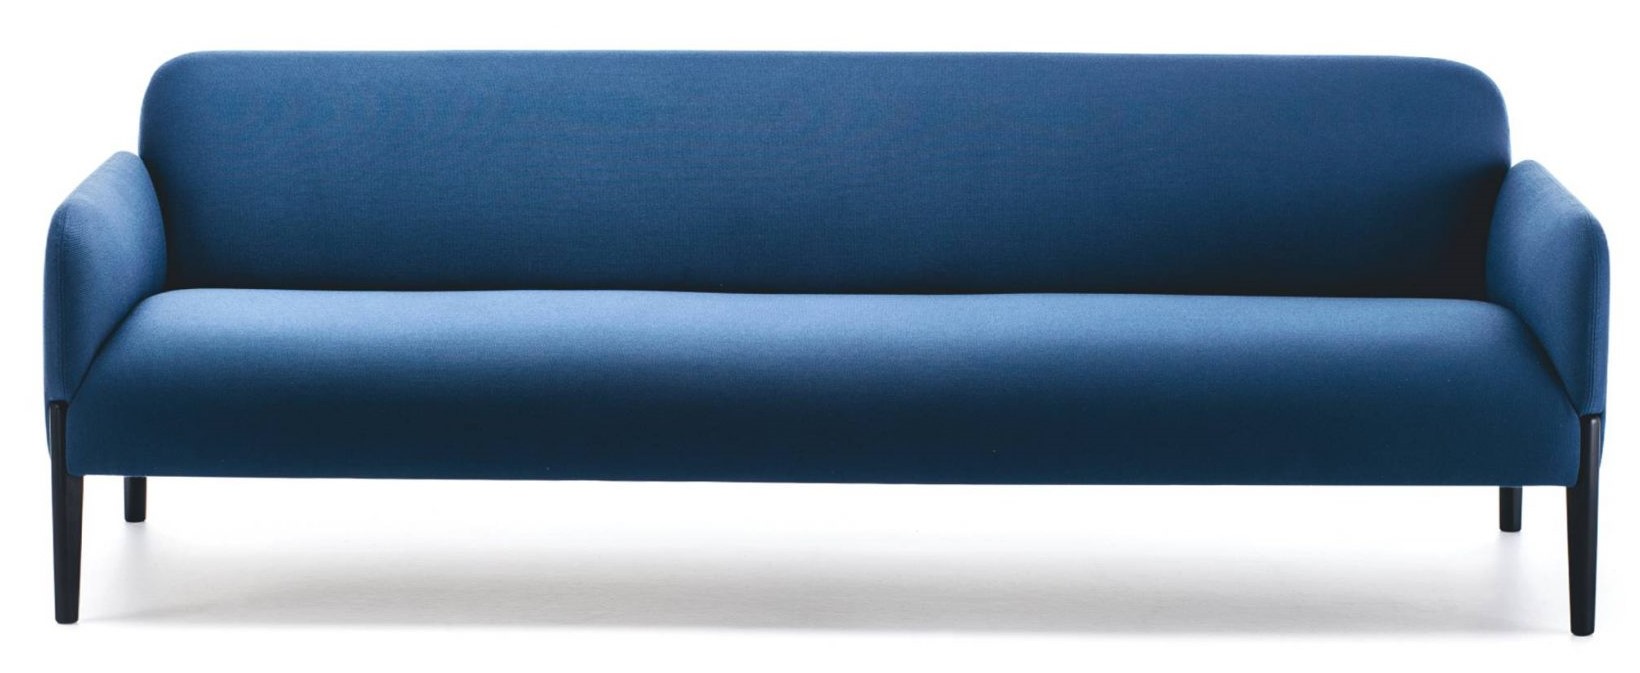 LaCividina - Trojmístná sedačka JOIN, 220 cm